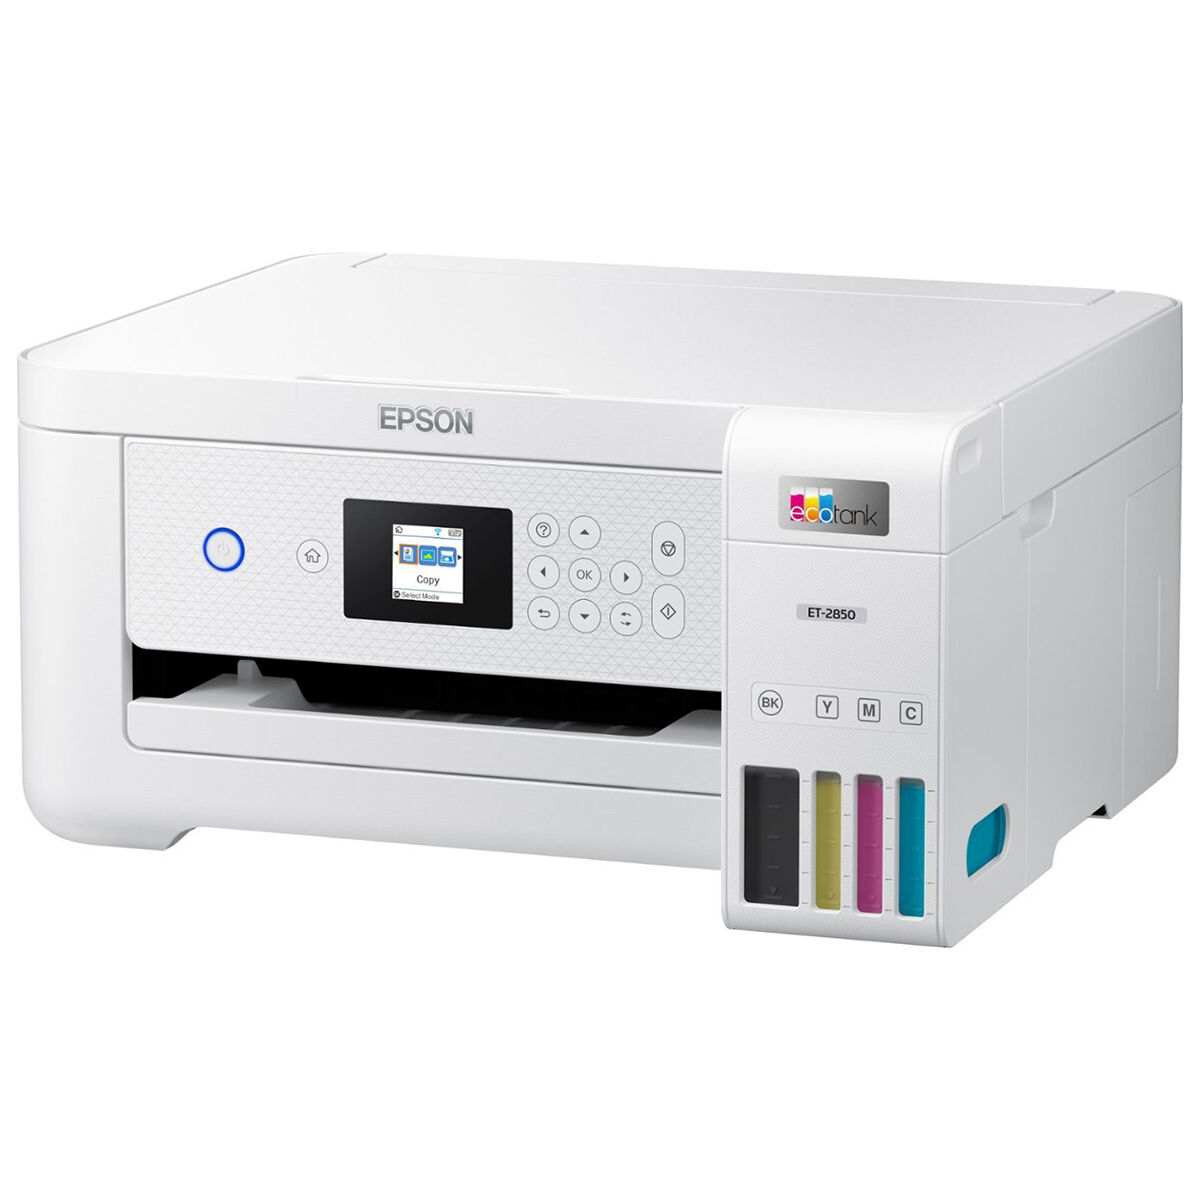 Epson - EcoTank ET-2850 All-in-One Supertank Inkjet Printer - White